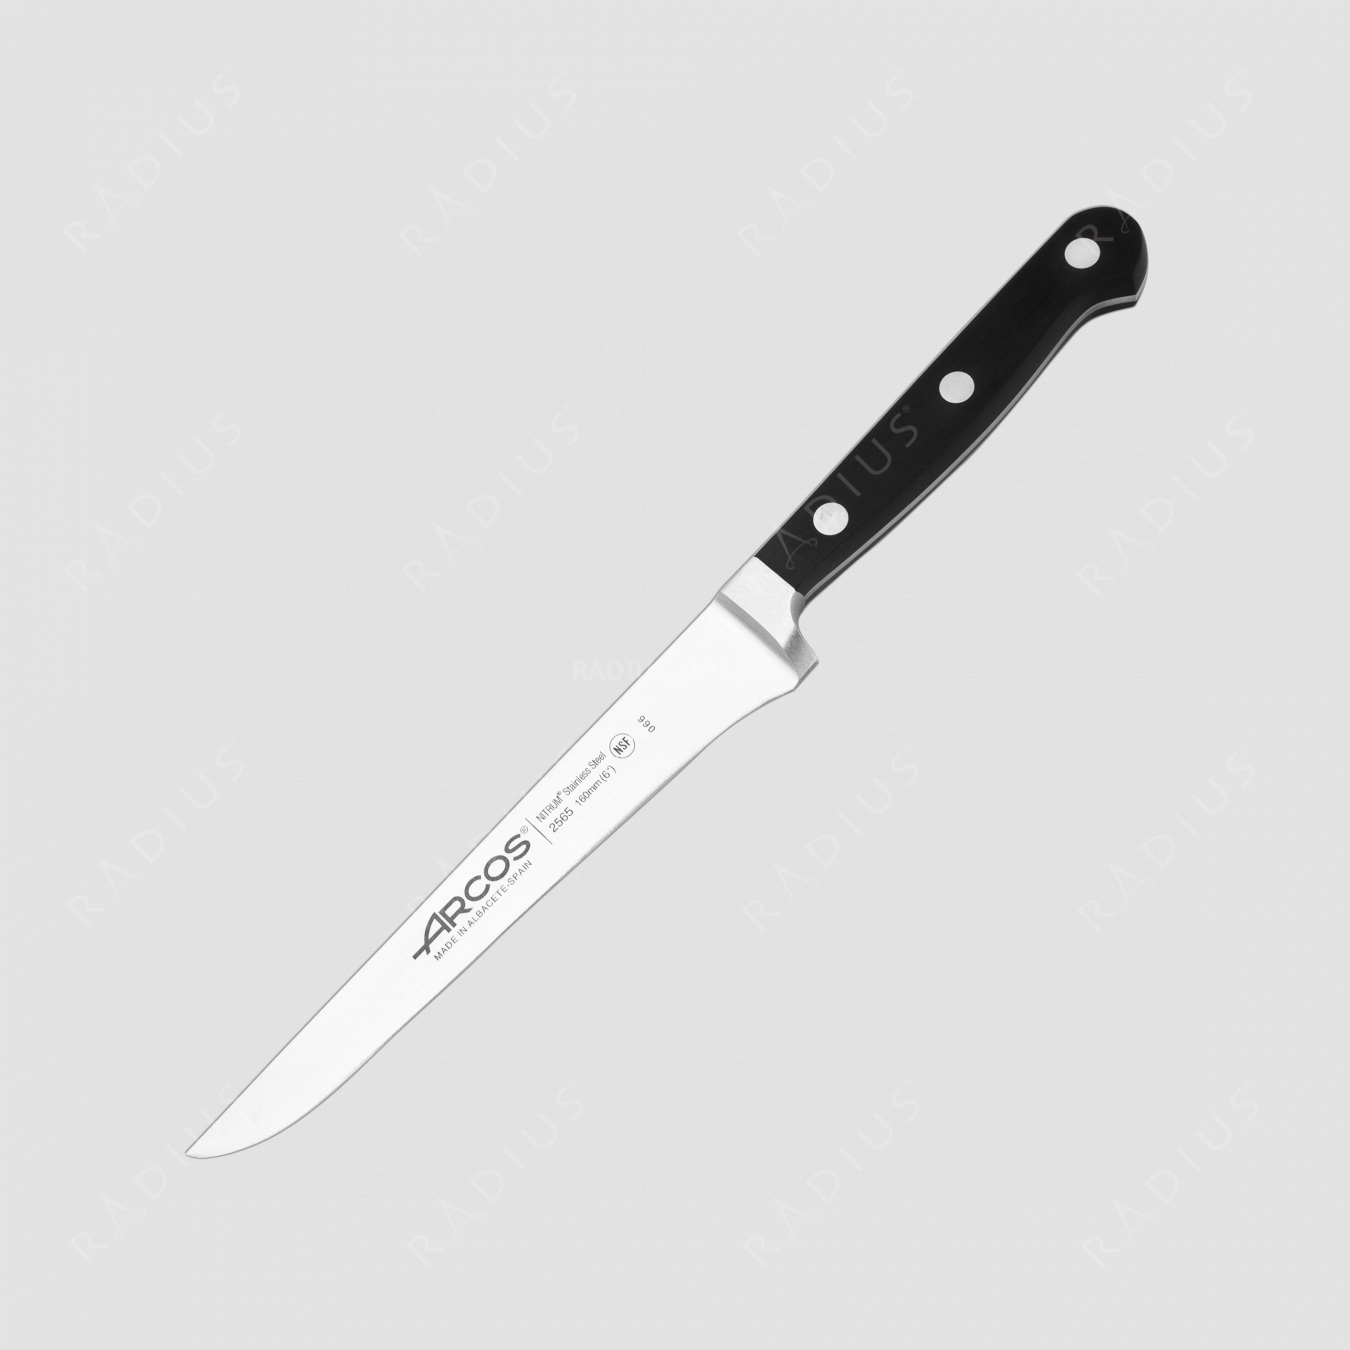 Нож кухонный обвалочный, гибкий 16 см, серия Clasica, ARCOS, Испания